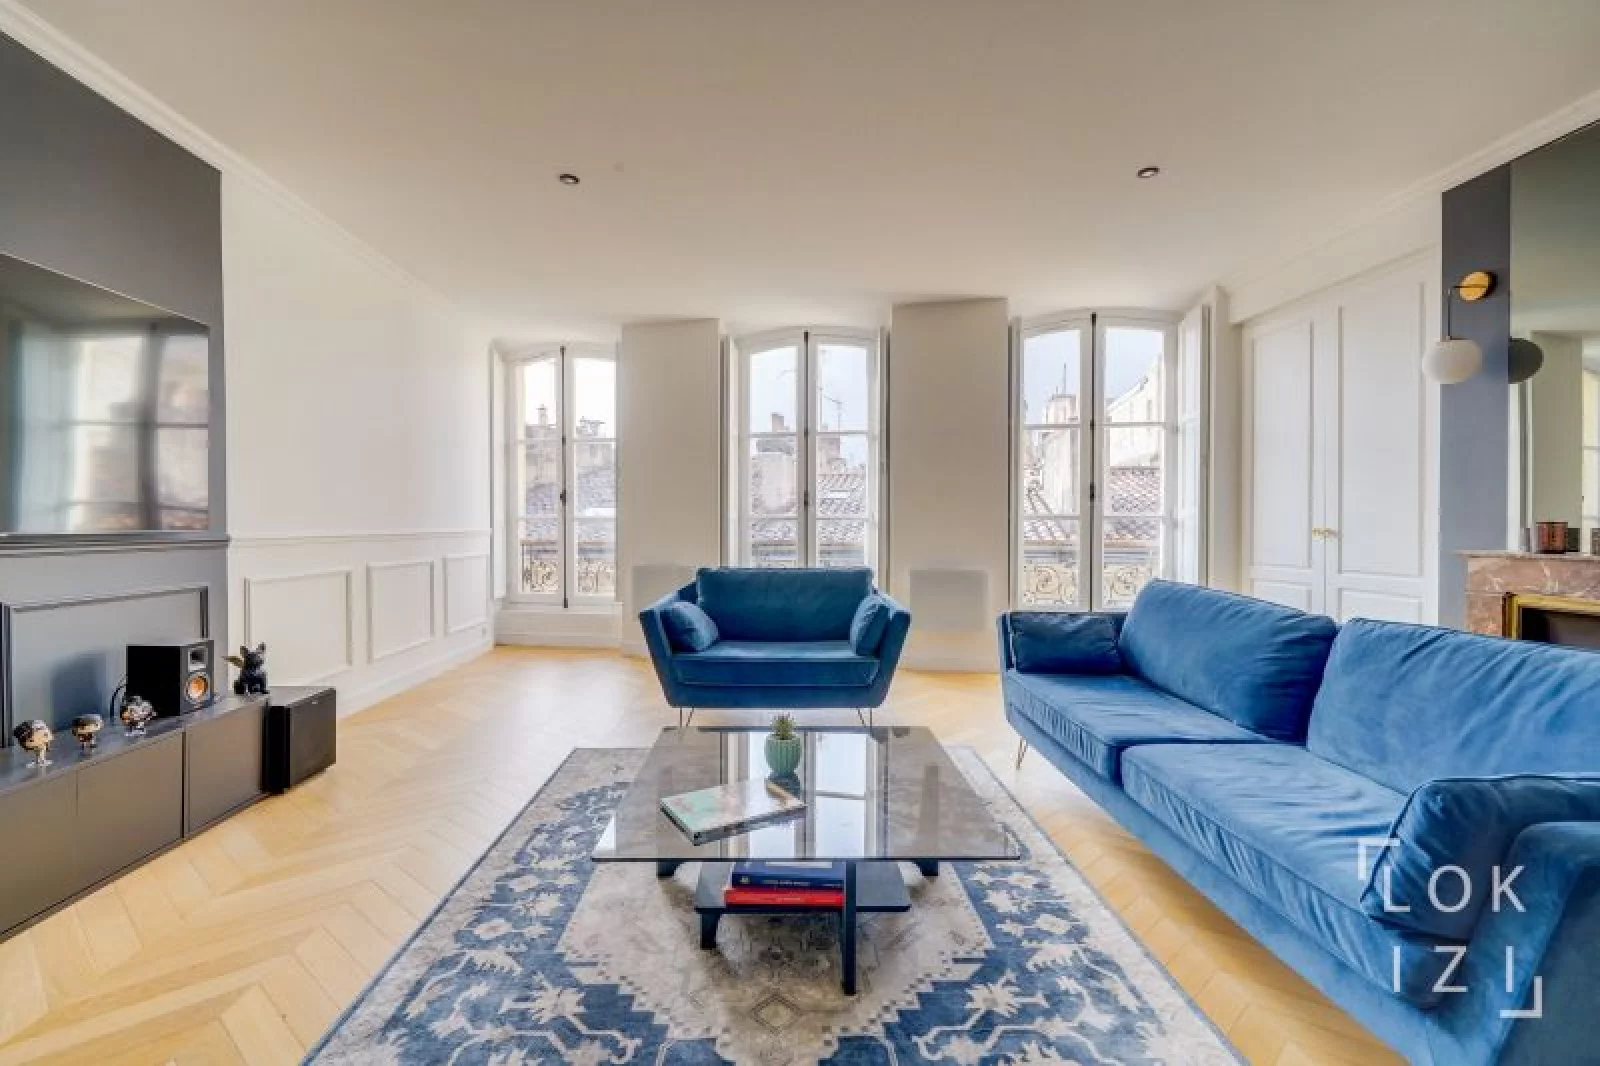 Location appartement meublé 5 pièces 110m² (Bordeaux centre - Bourse)